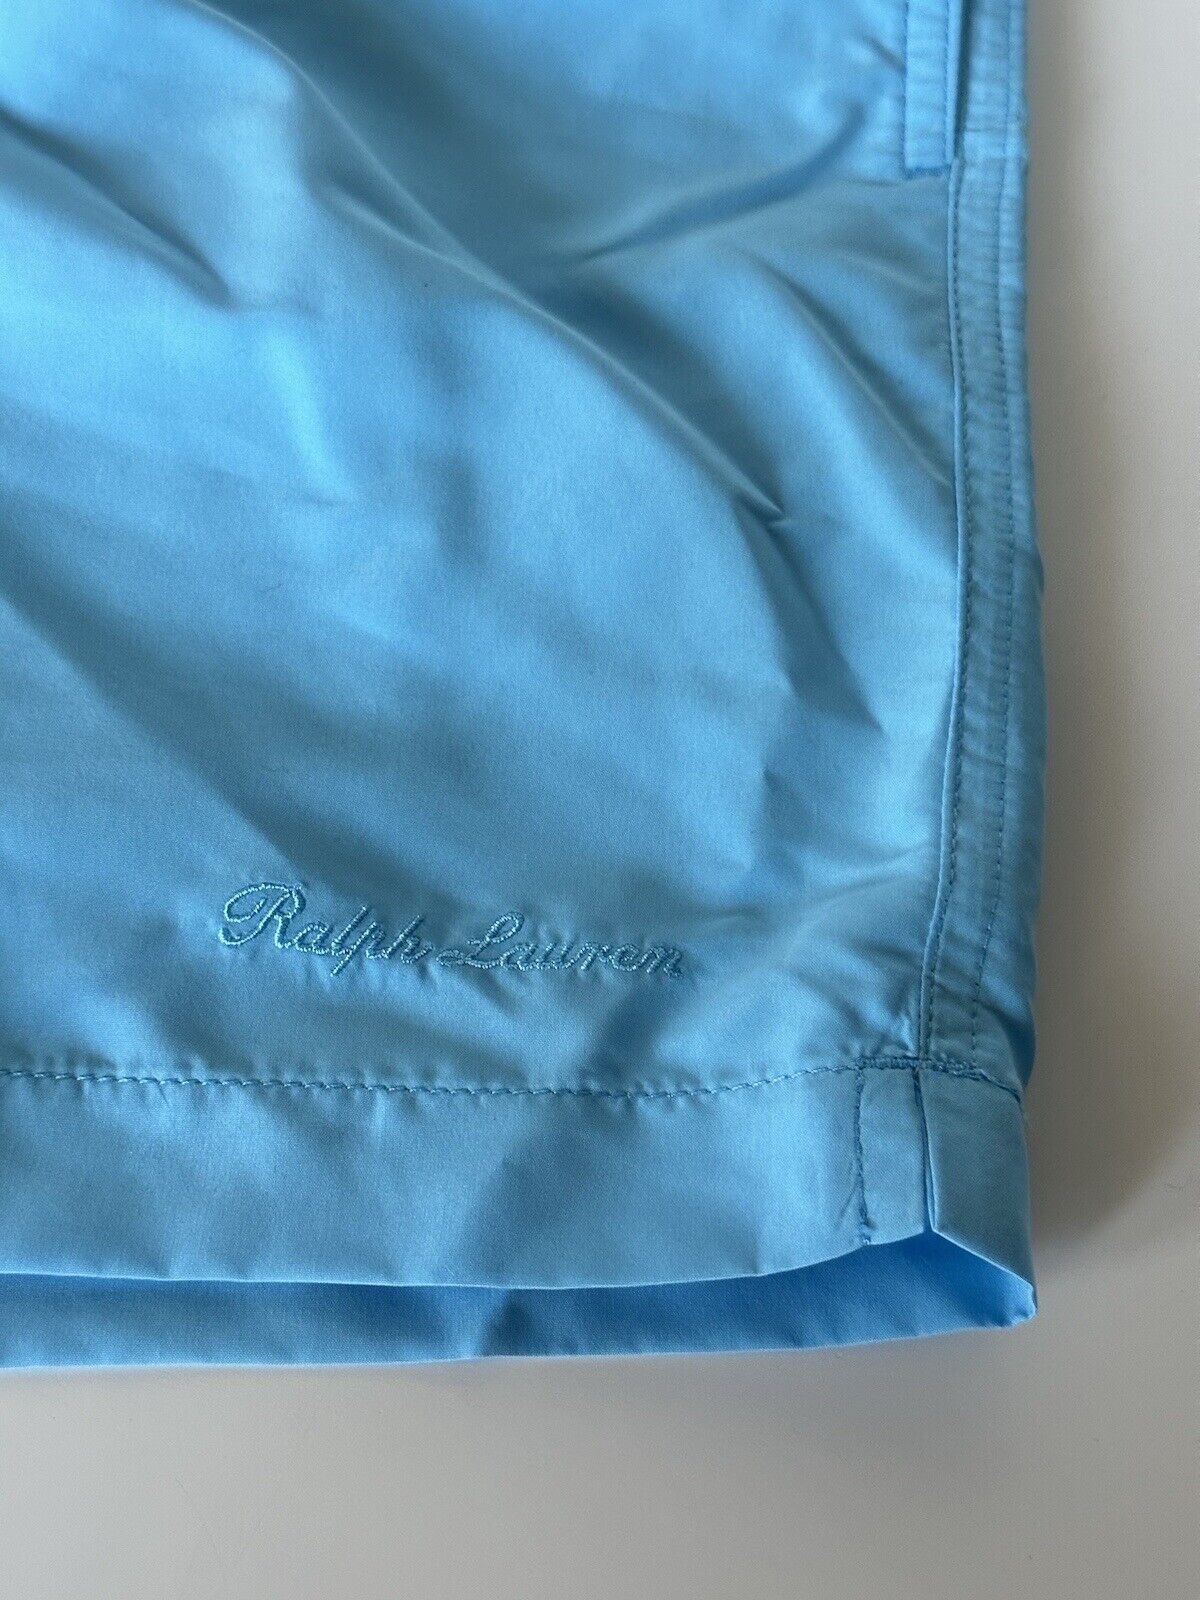 Neu mit Etikett: 295 $ Polo Ralph Lauren Purple Label Blaue Badeshorts für Herren XL Portugal 